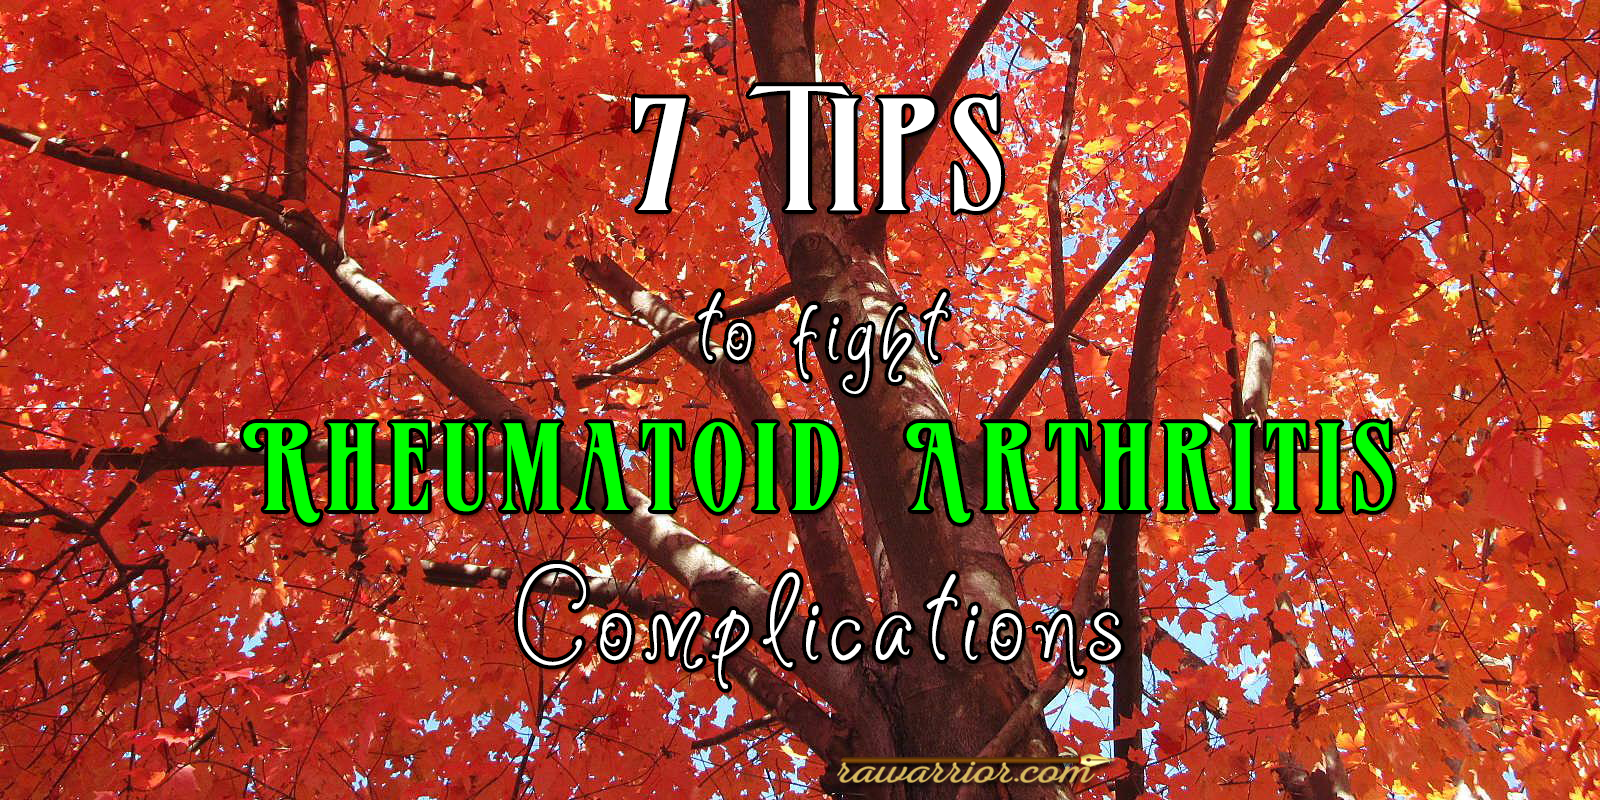 7-tips-on-rheumatoid-arthritis-complications-rheumatoid-arthritis-warrior